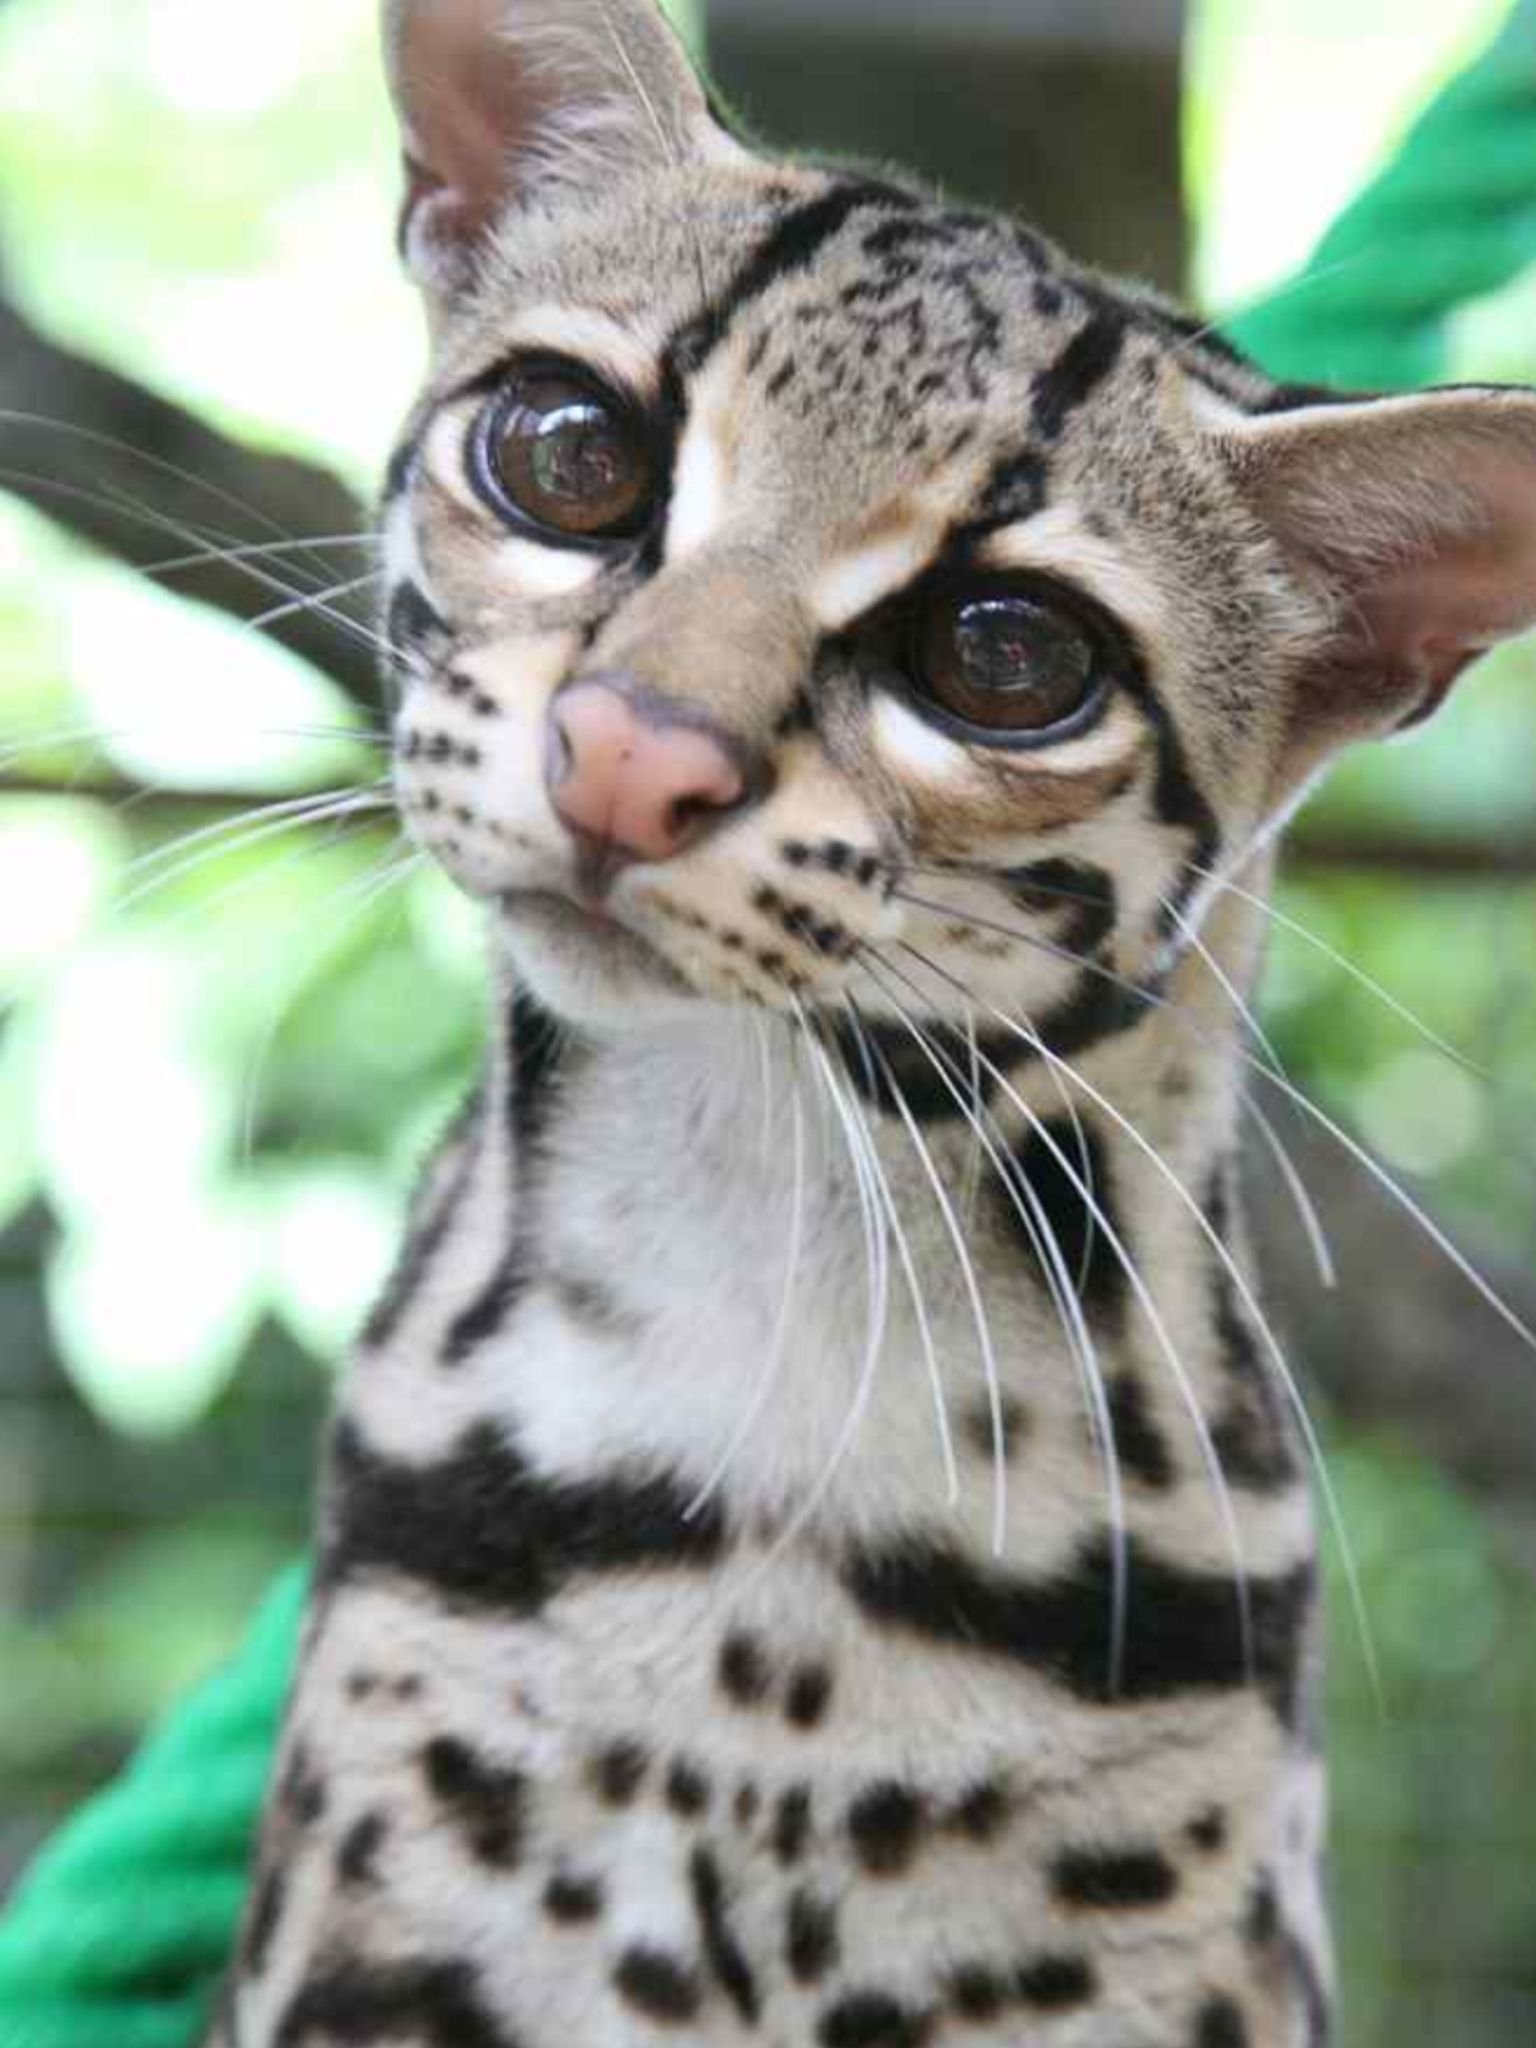 Очень редких кошек. Кошки породы Оцелот. Леопард онцилла. Оцелот, онцилла, Маргай. Оцелот (leopardus pardalis).